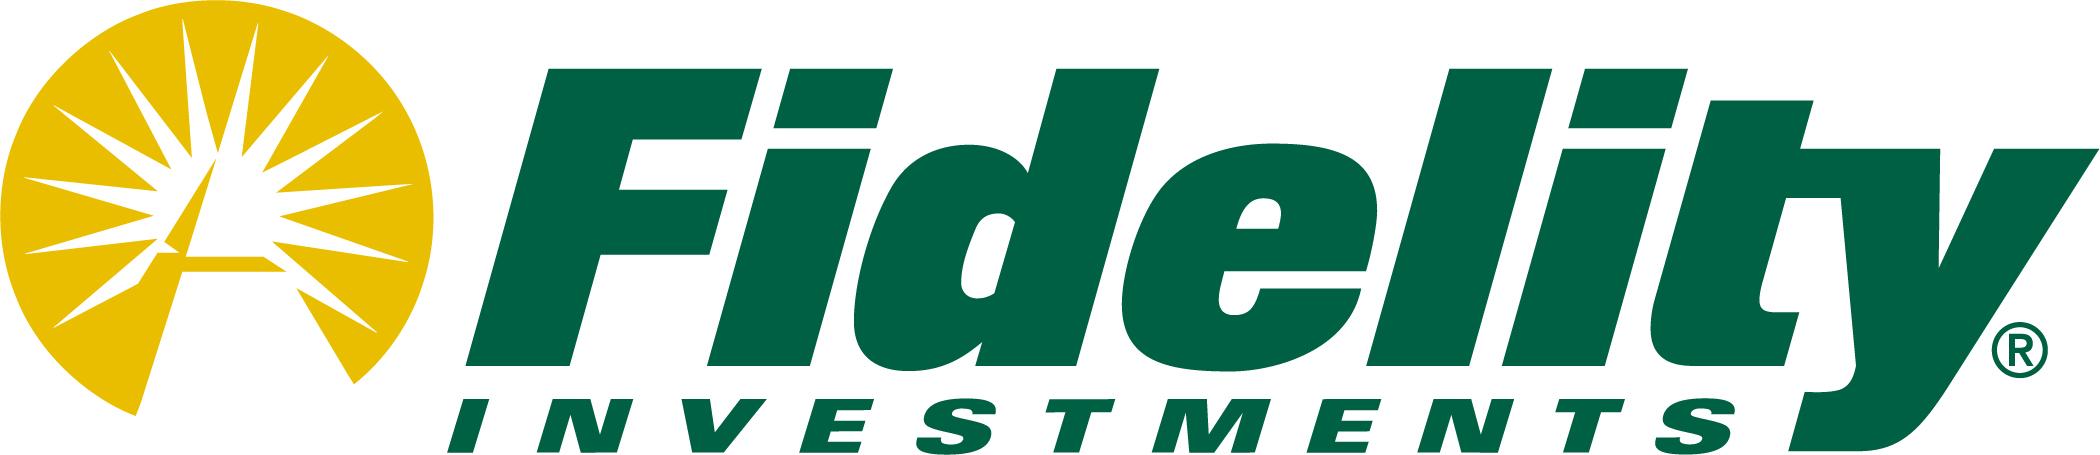 FIDELITY-logo.jpg